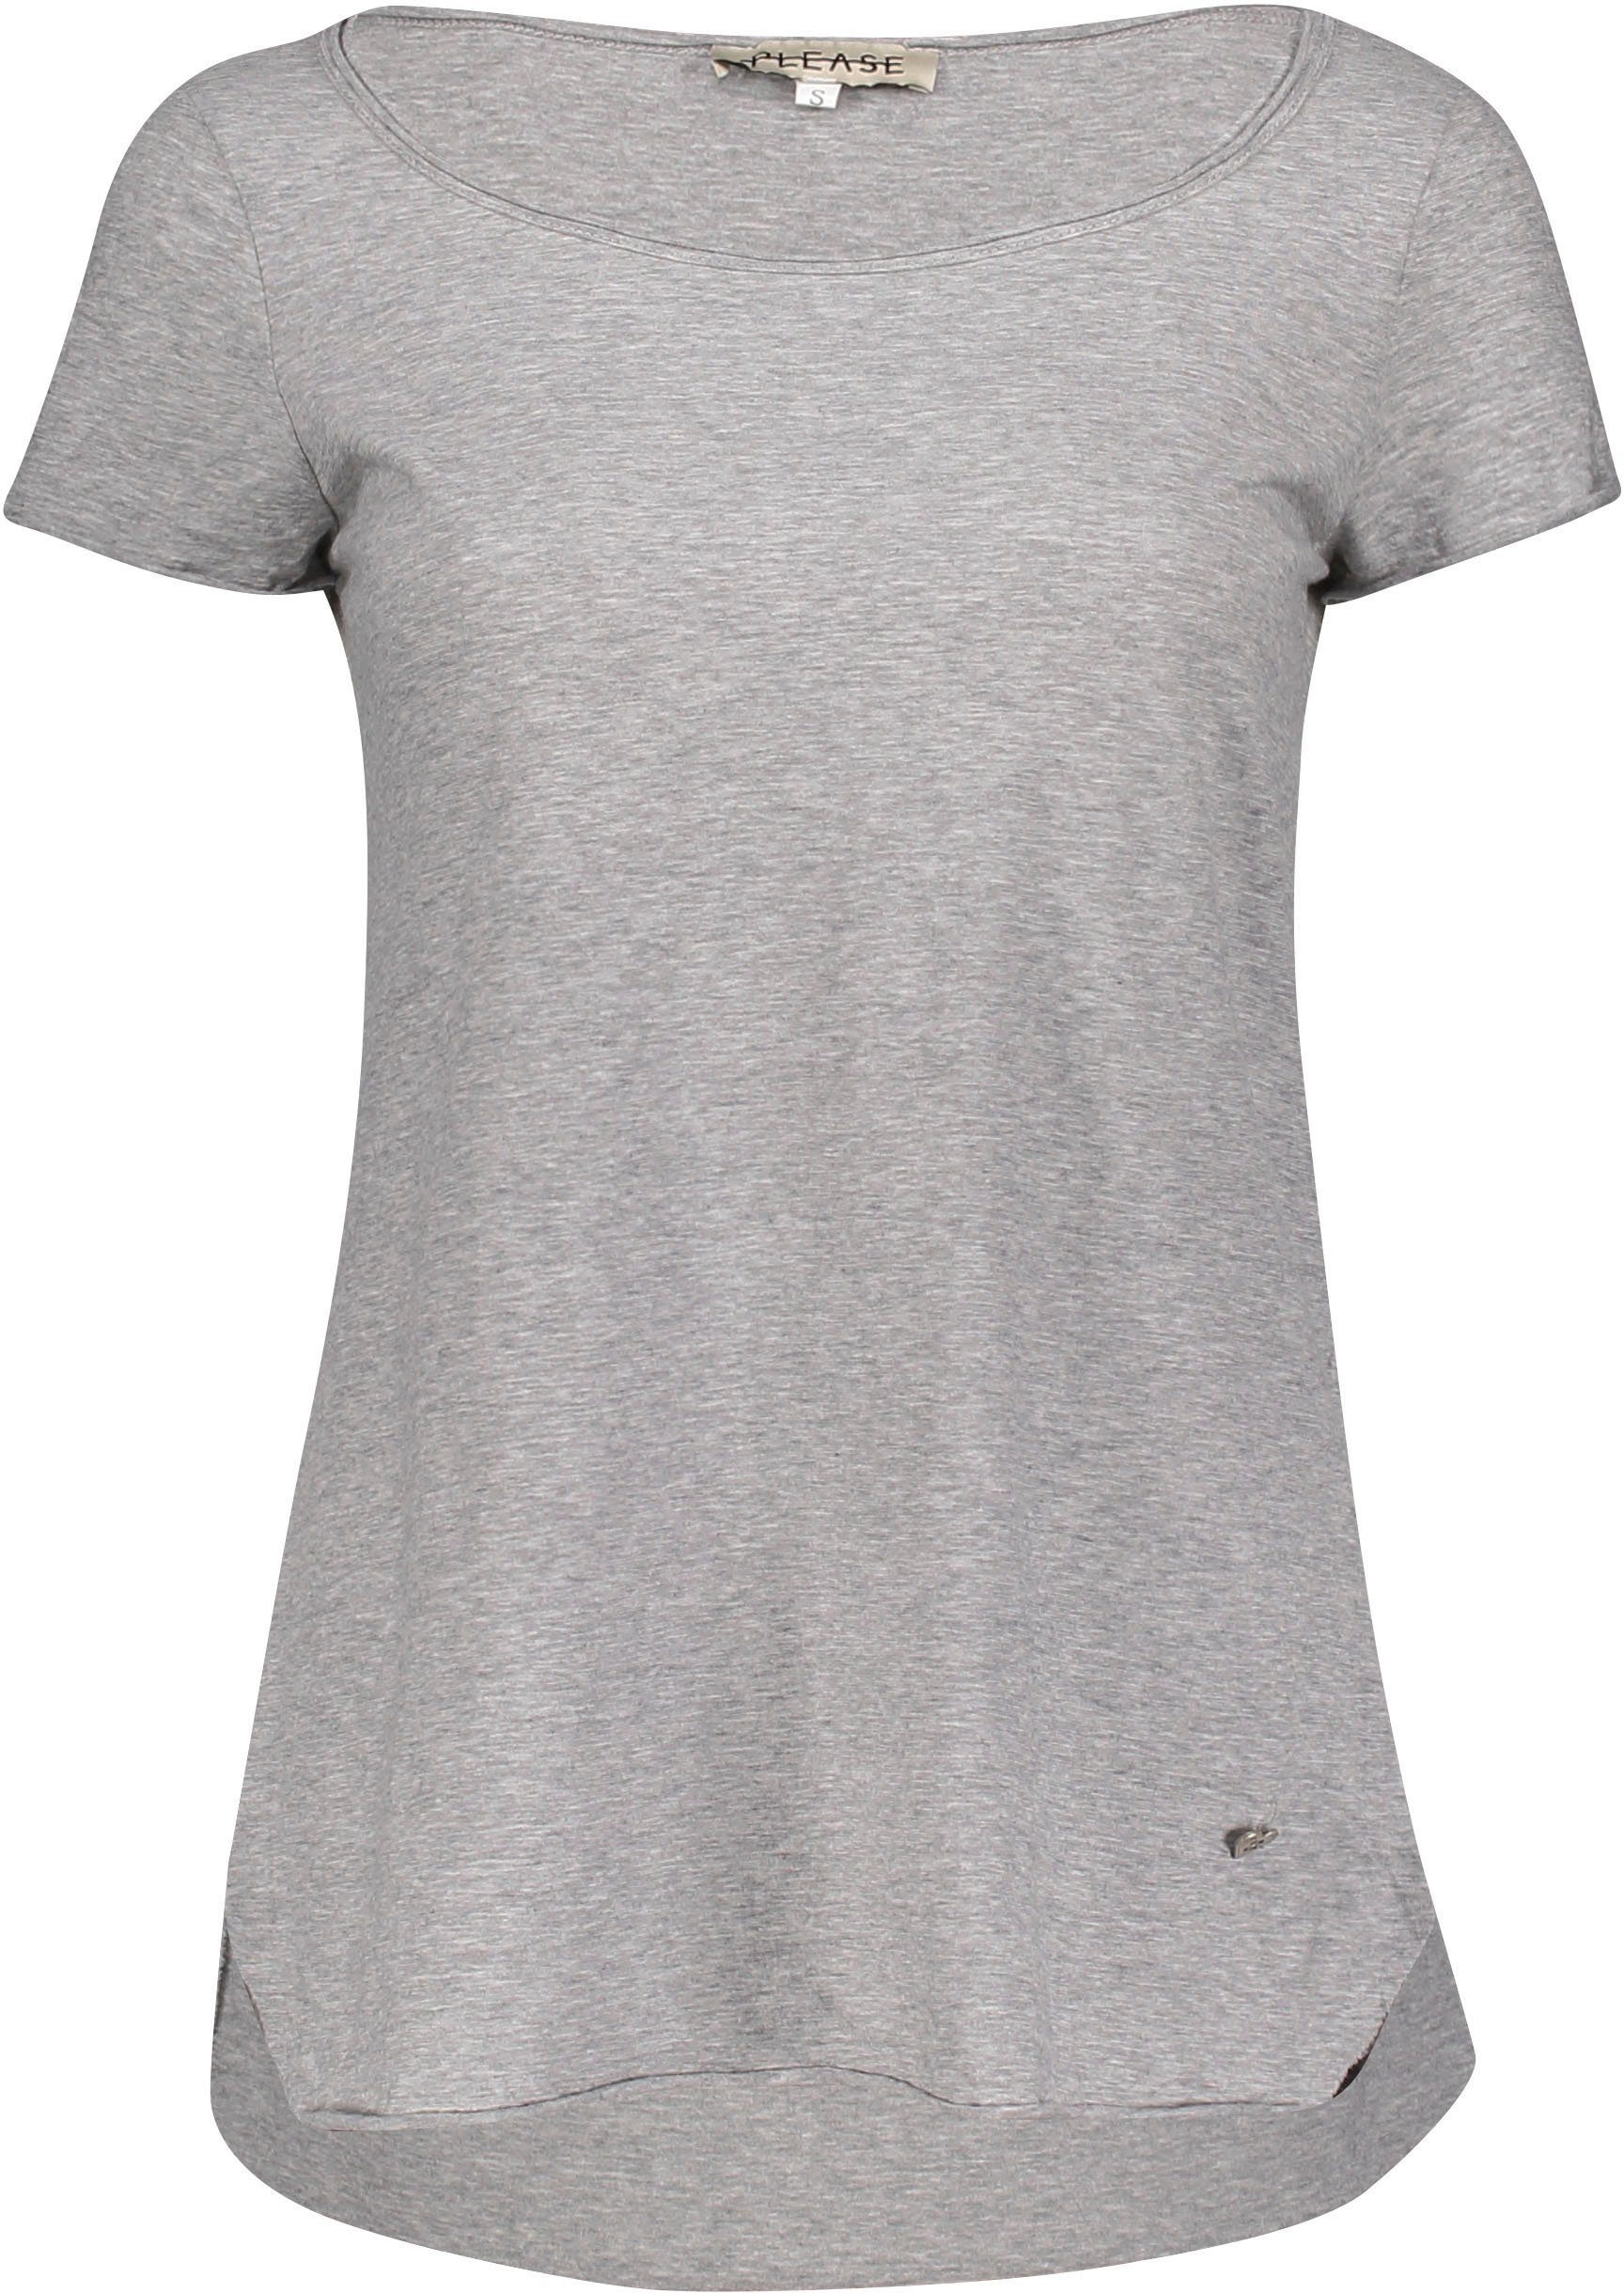 und T-Shirt Saumabschlüssen M00A angeschnittenen Jeans mit meliert) (grau grigio 1907 melange Please Metal-Label leicht Please